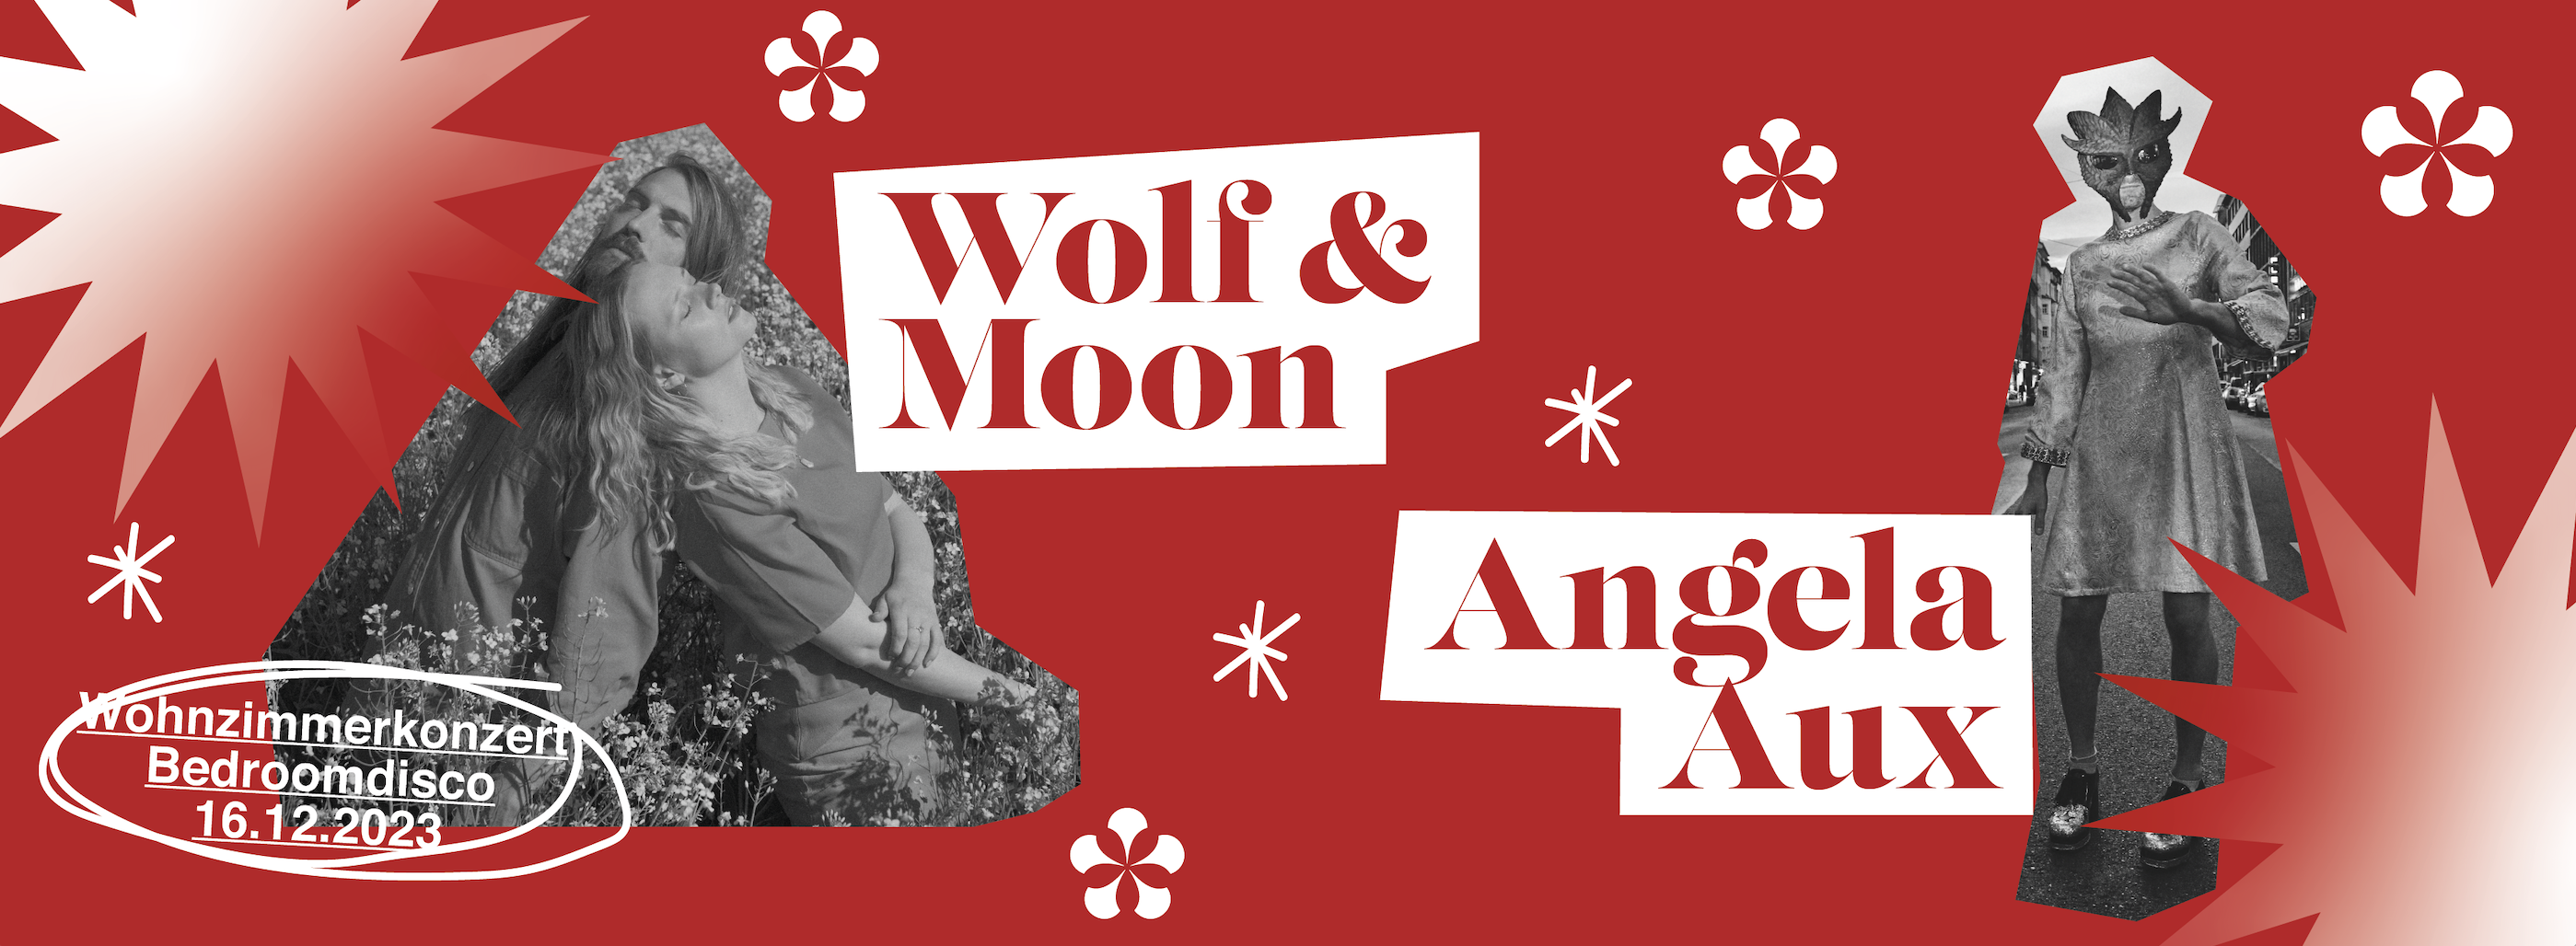 16.12.23 Wohnzimmerkonzert mit Wolf & Moon und Angela Aux